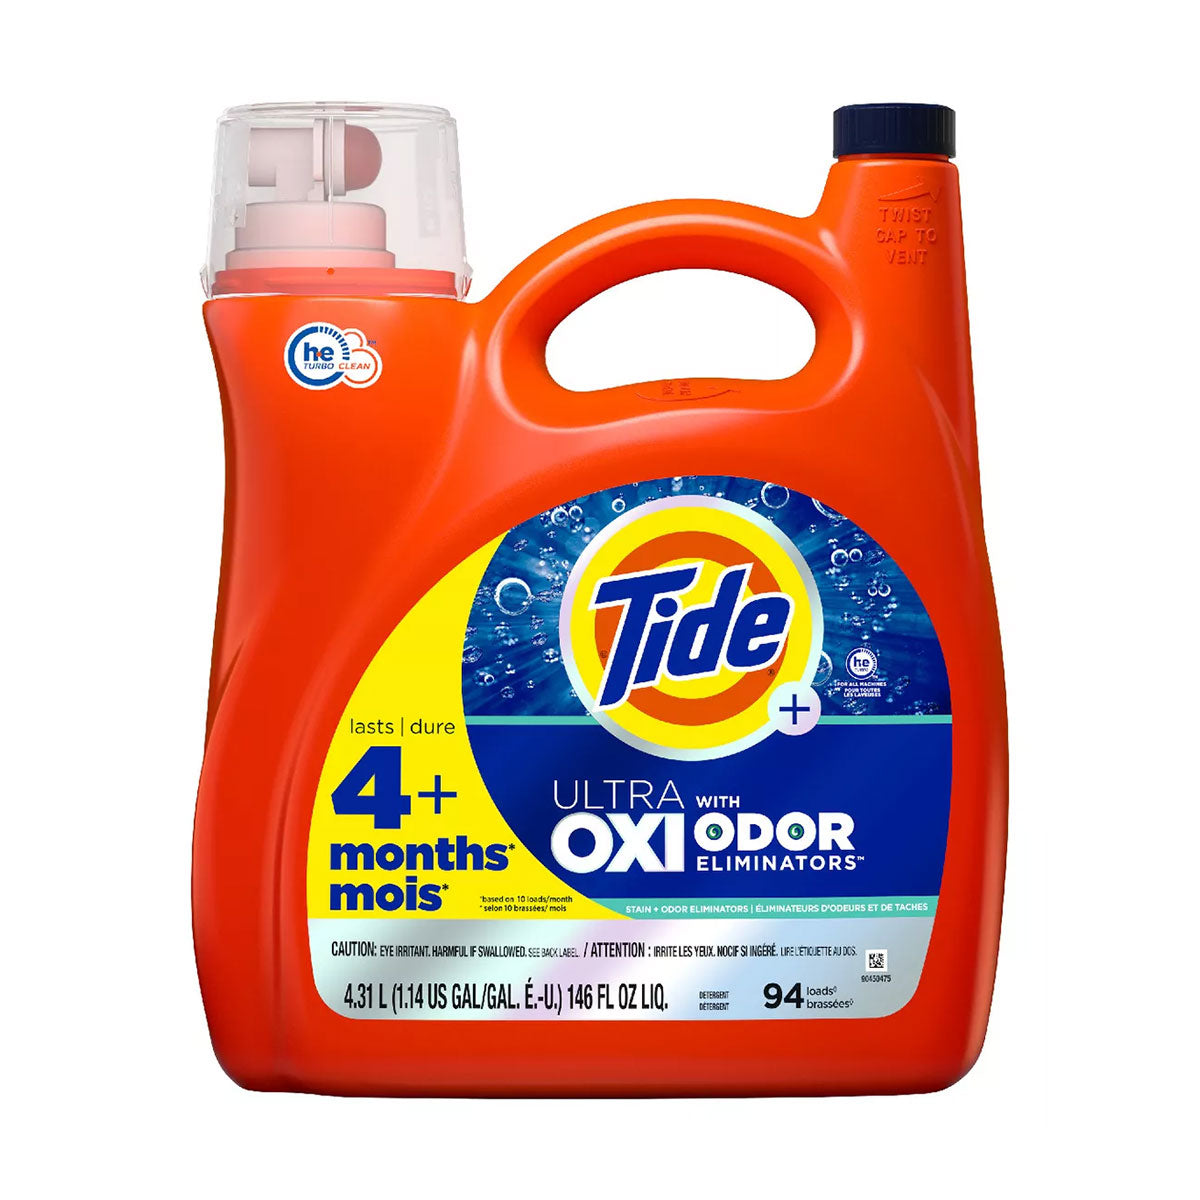 Detergente líquido concentrado para ropa Tide Plus Ultra Oxi Odor Eliminator 4,31 litros (100 cargas)